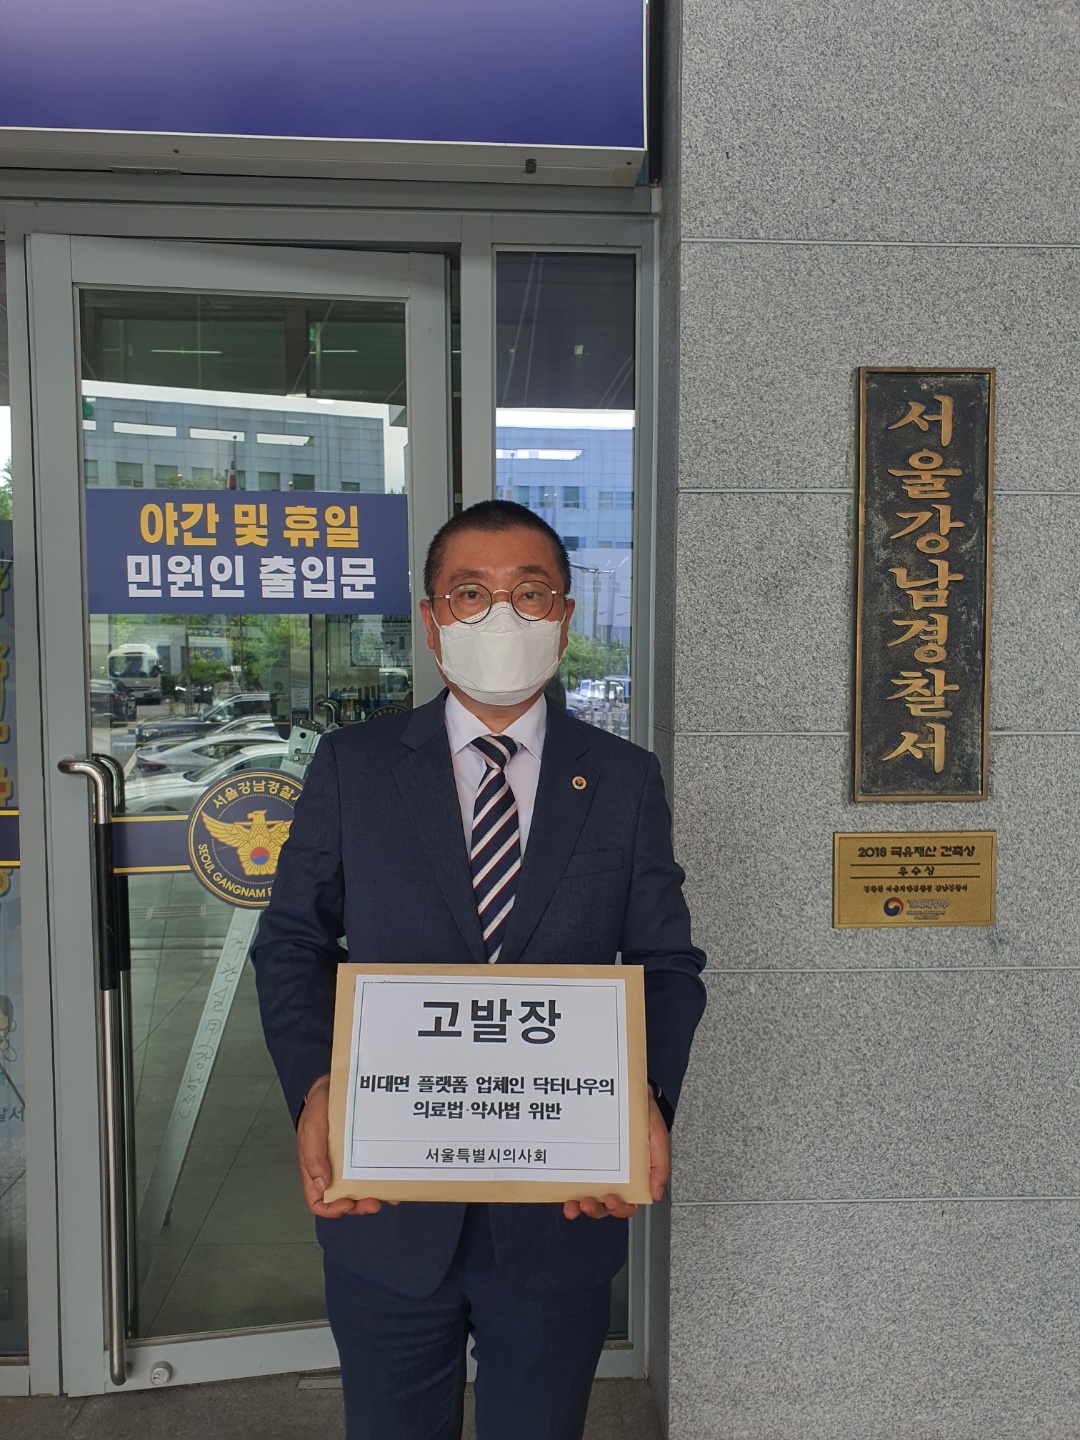 박명하 서울시의사회장은 13일 의료법과 약사법 위반 혐의로 비대면진료 앱 닥터나우를 서울강남경찰서에 고발했다.